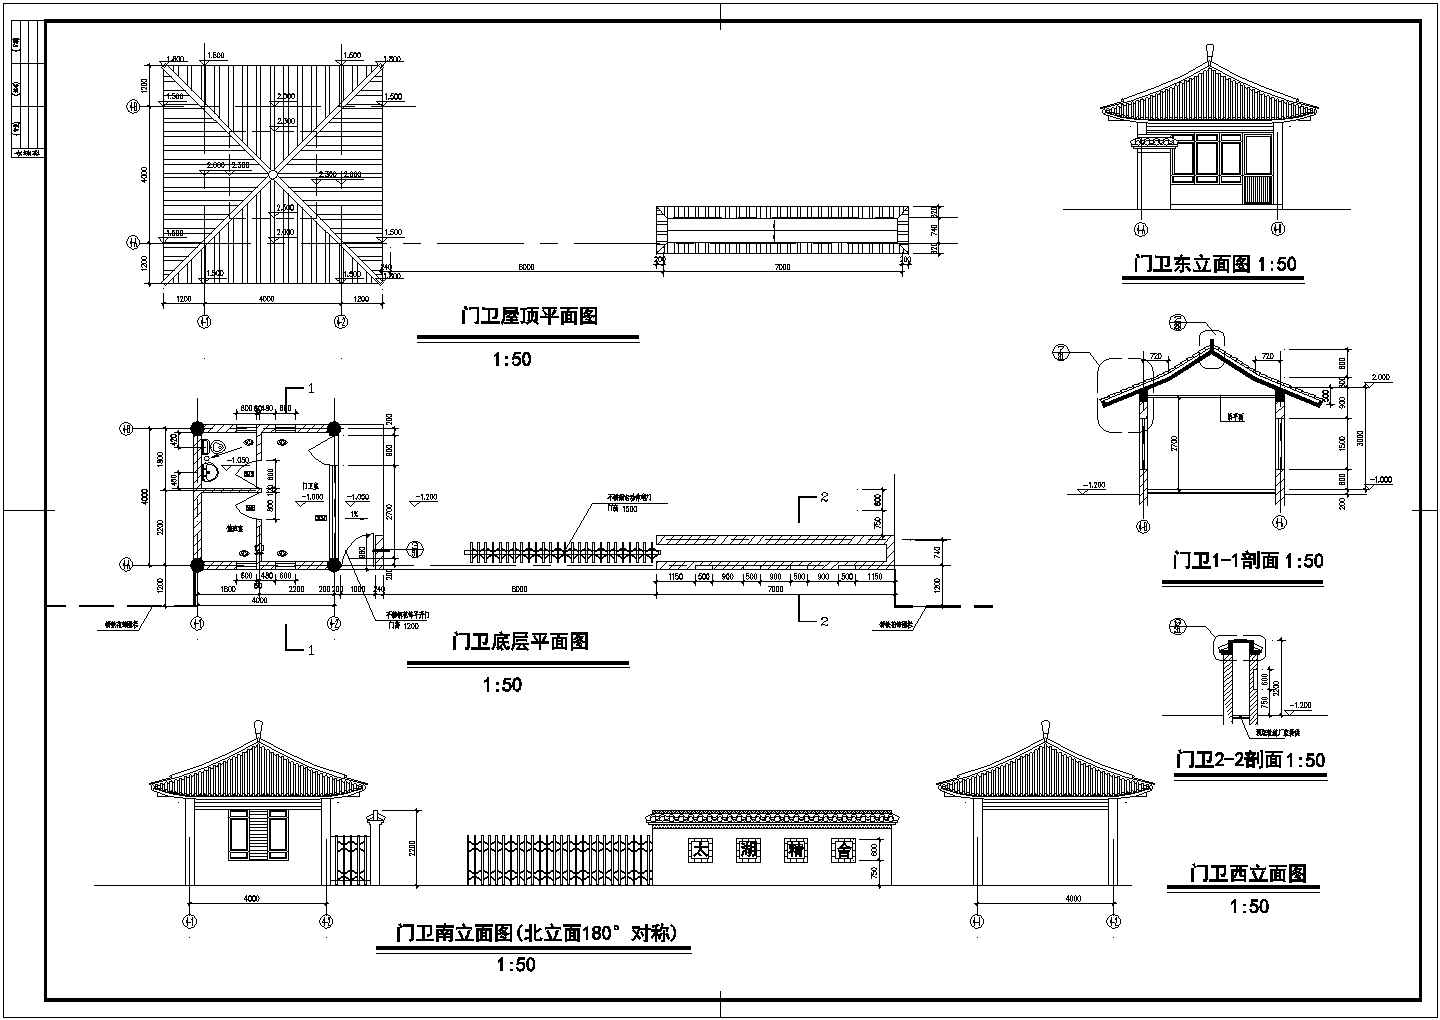 【江苏】某景区古建筑设计施工图纸